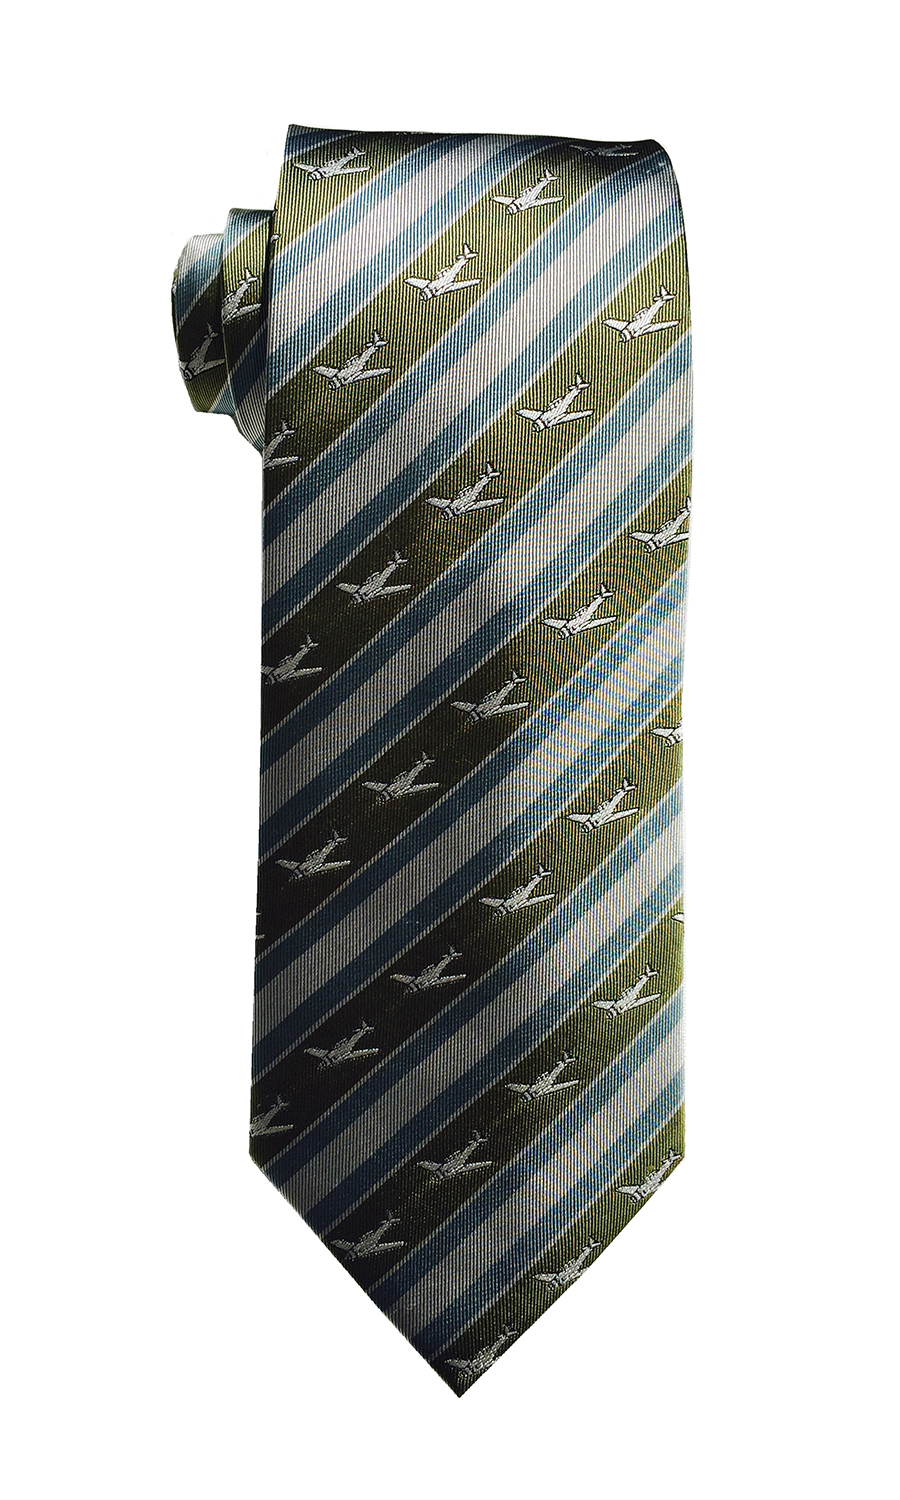 doppeldecker design designer aviation aircraft silk tie t-6 t6